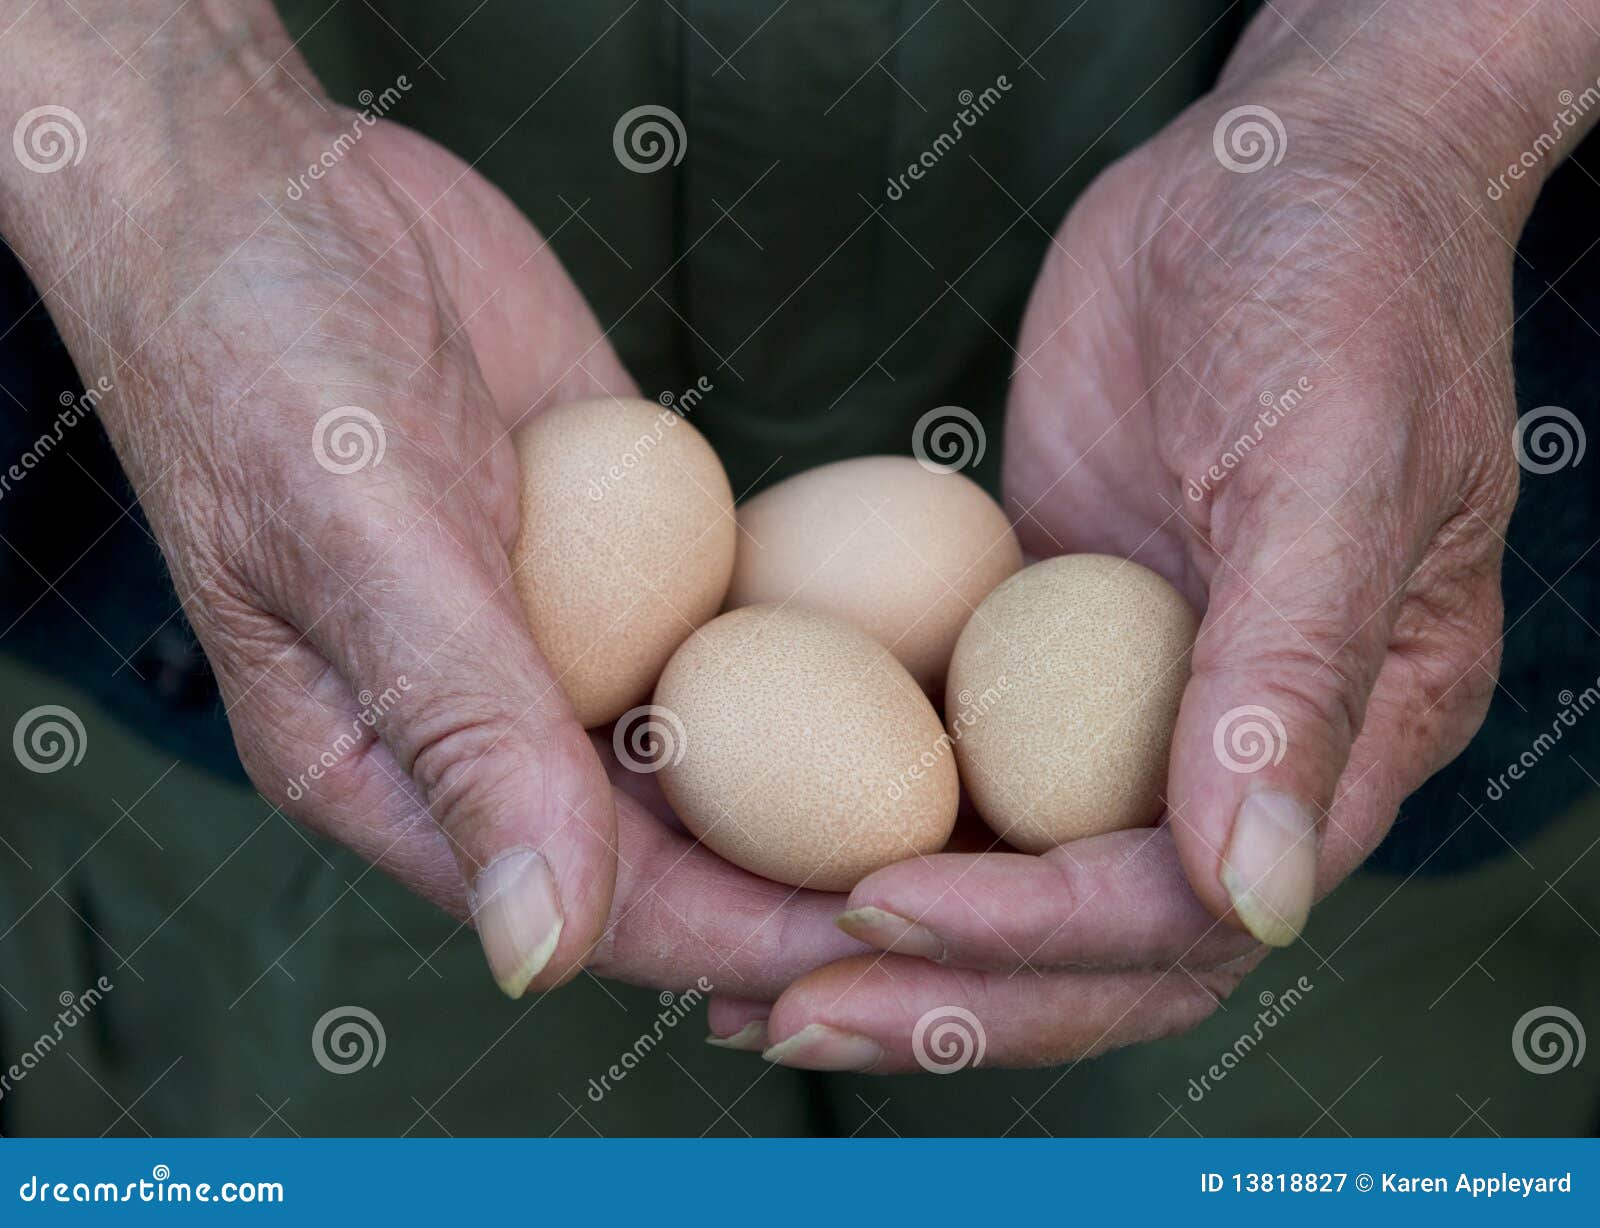 Плотное яичко. Здоровые человеческие яйца. Яйца пожилого человека.